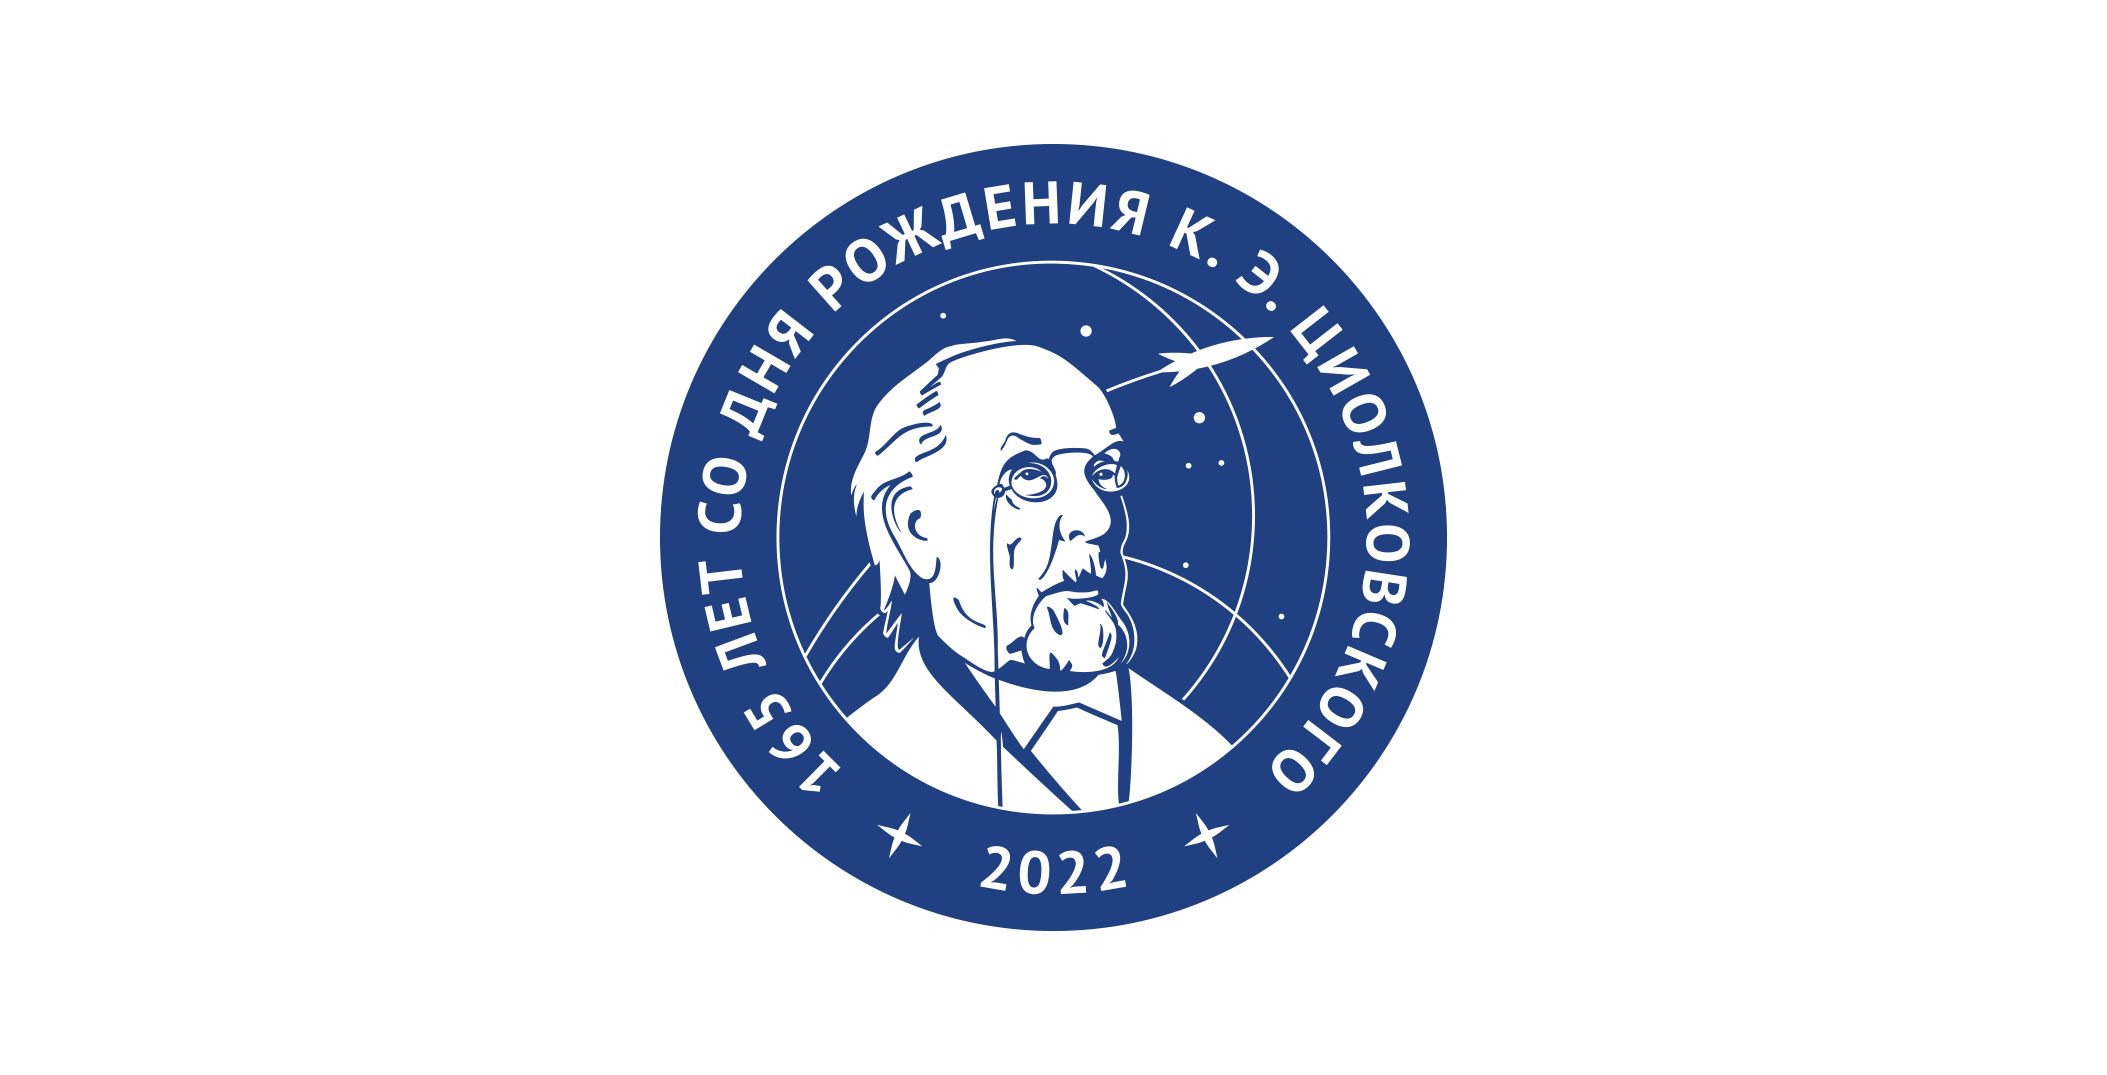 22 м c. Союз МС-22. Союз МС-22 «К. Э. Циолковский». Роскосмос эмблема 2022.